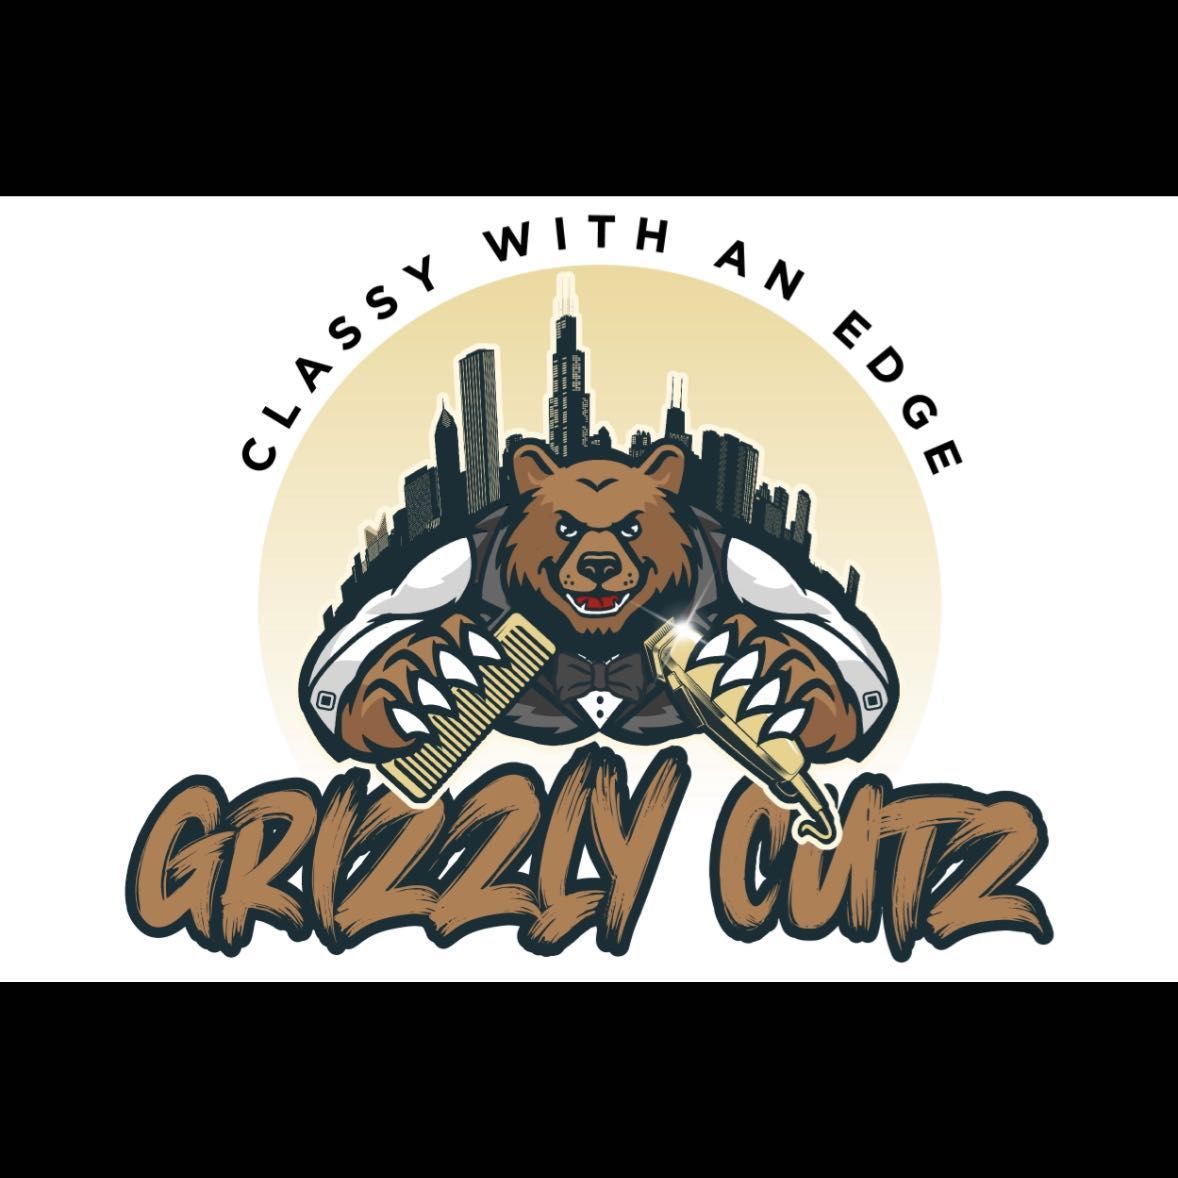 Grizzly Cutz, 1220 W. Ogden Ave., Suite D, Naperville, 60563